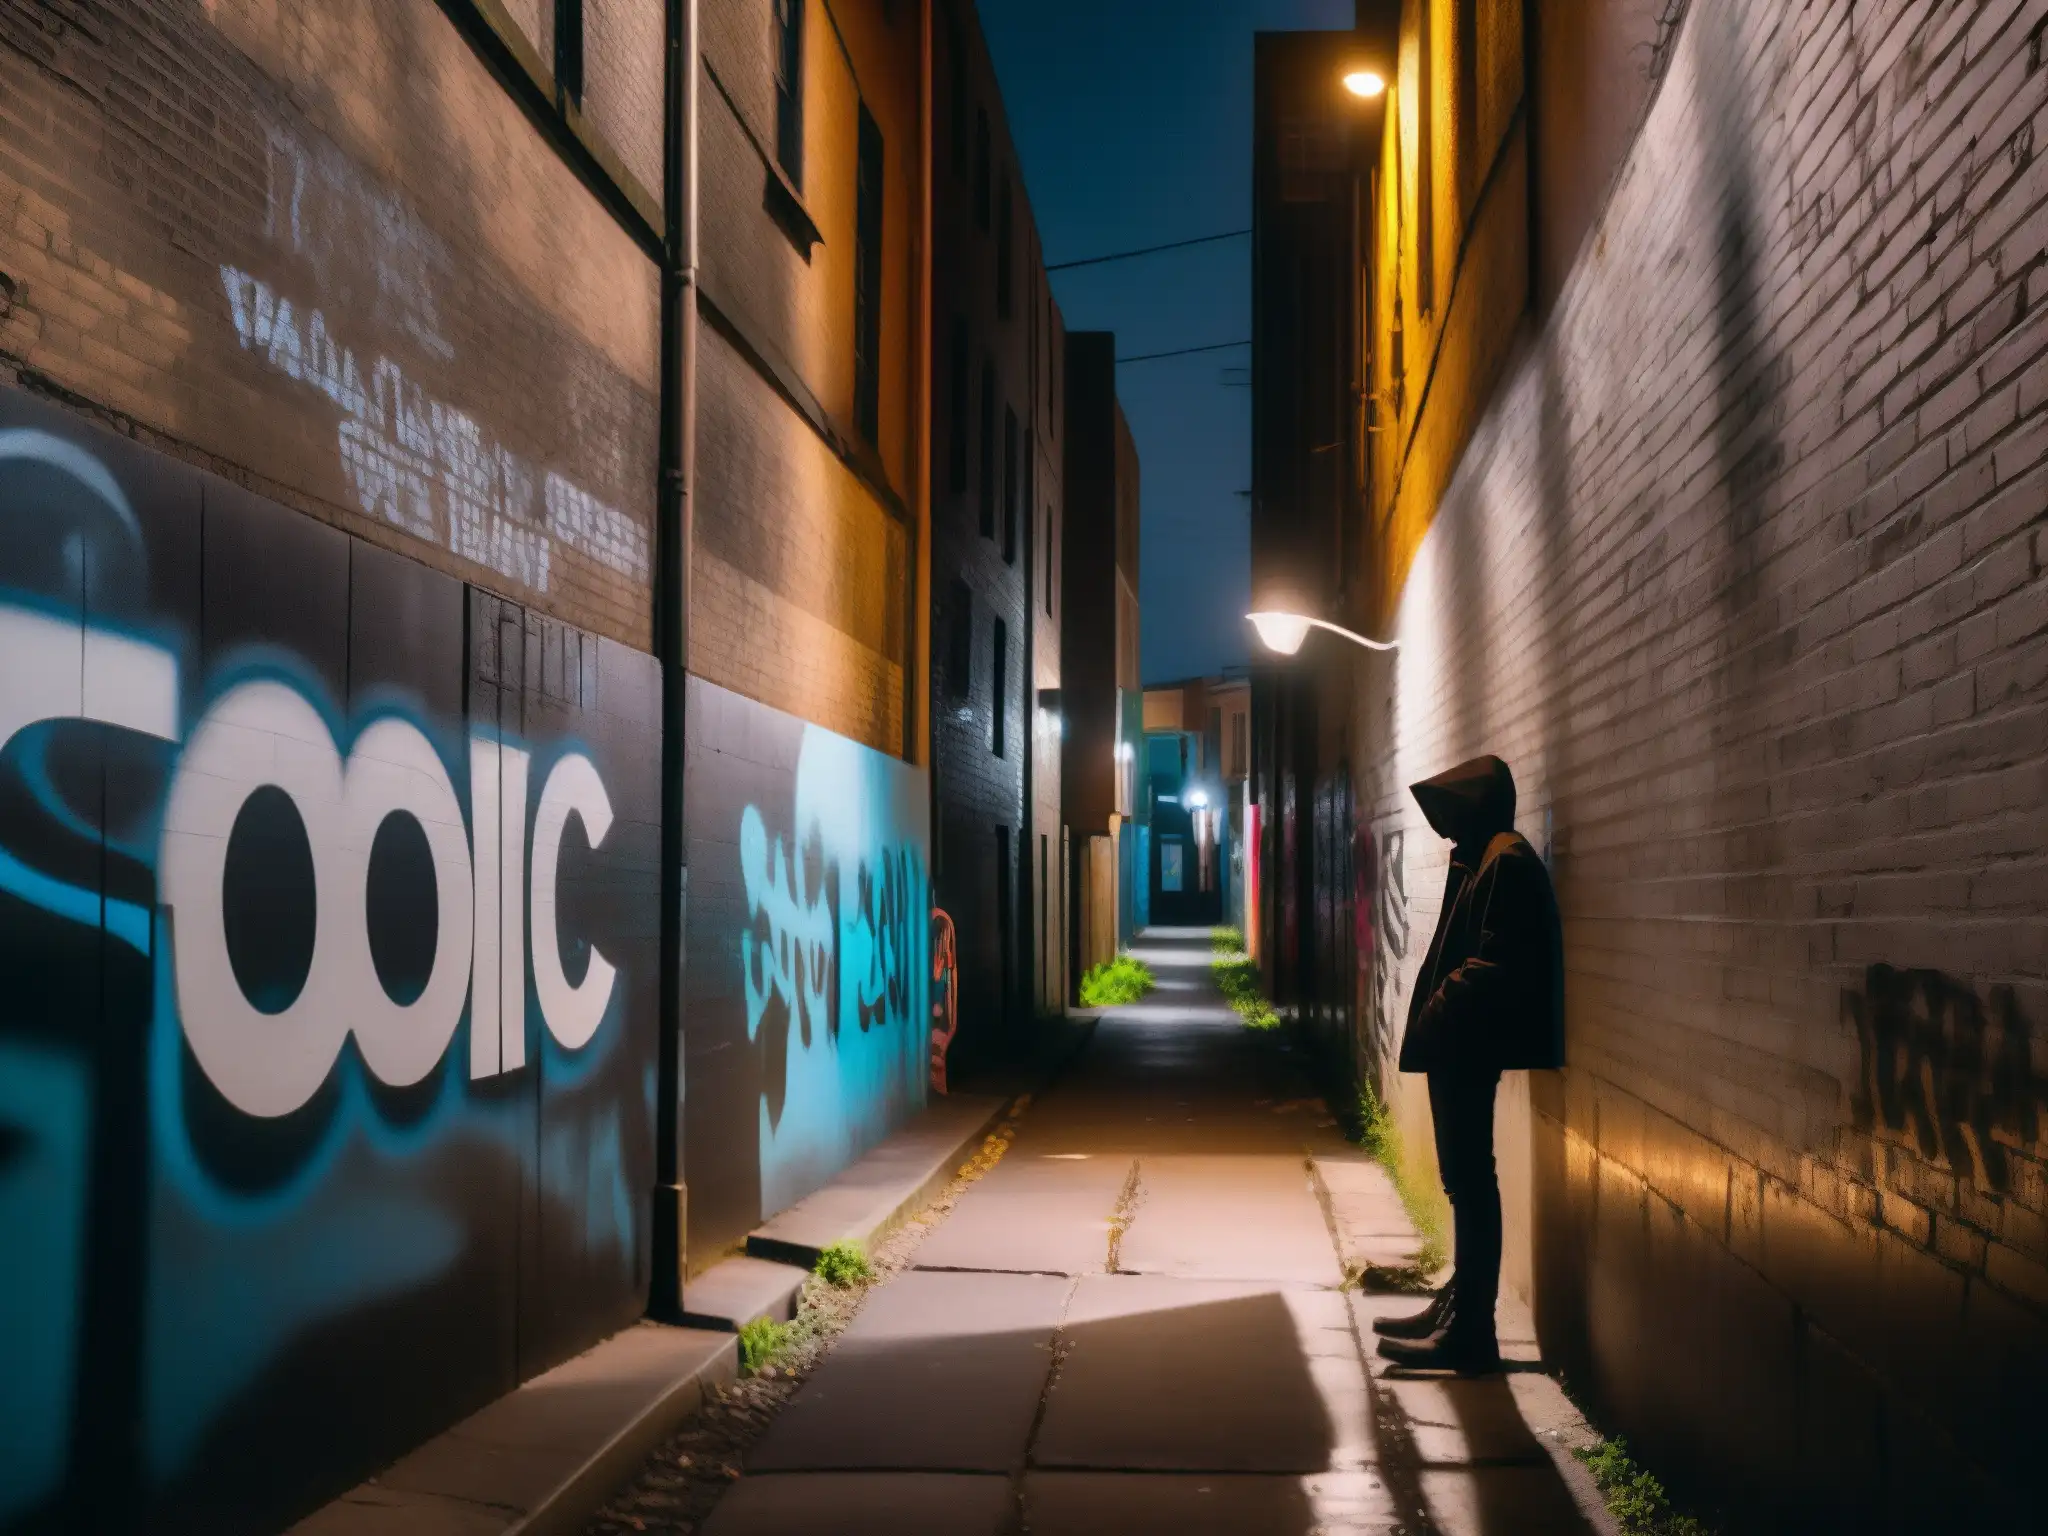 Un callejón oscuro y misterioso iluminado por una lámpara, con graffiti perturbador que refleja 'relaciones tóxicas leyendas urbanas'